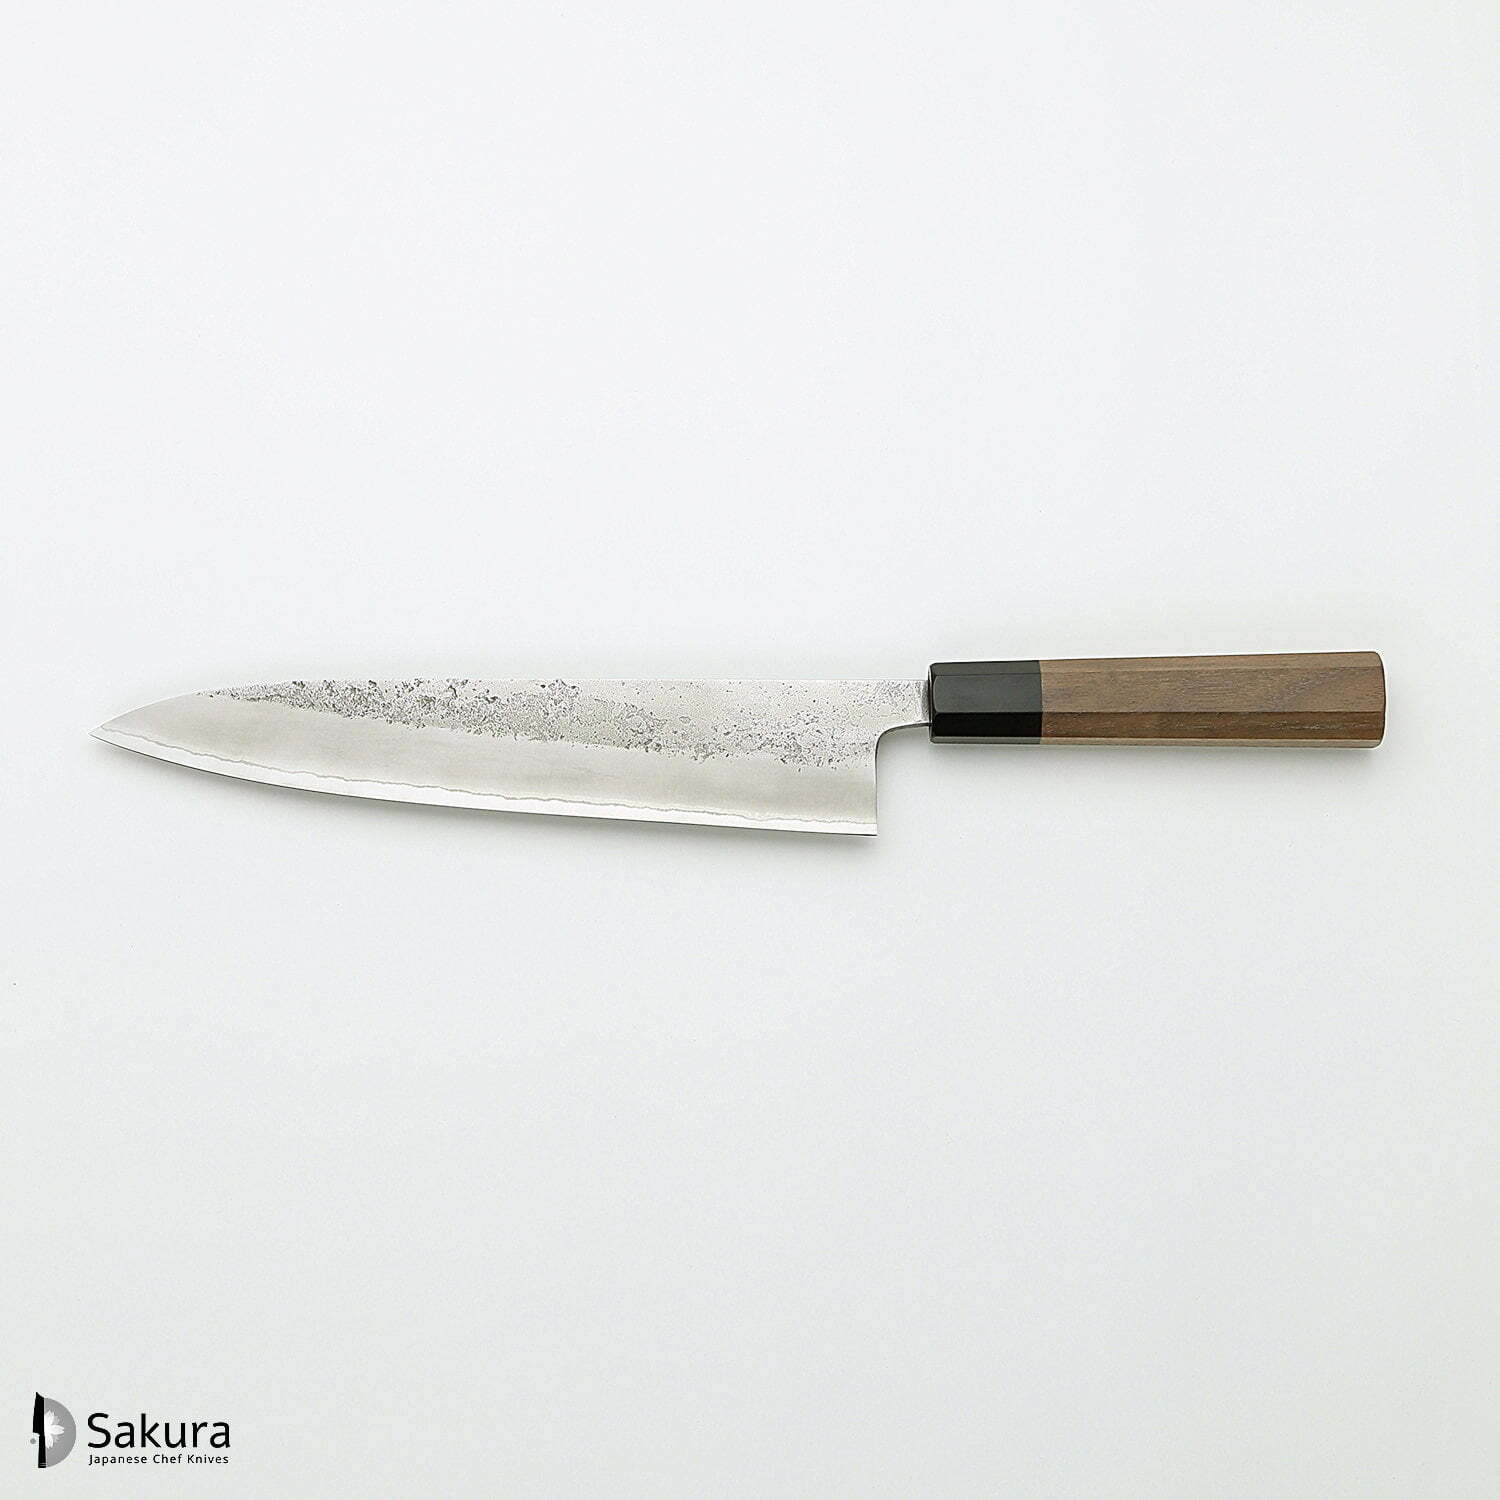 סכין שף רב-תכליתית גִּיוּטוֹ 240מ״מ מחושלת בעבודת יד 3 שכבות: פלדת פחמן יפנית מתקדמת מסוג Shirogami #2 עטופה פלדת אל-חלד גימור מט חיספוס טבעי יושיקאנה יפן